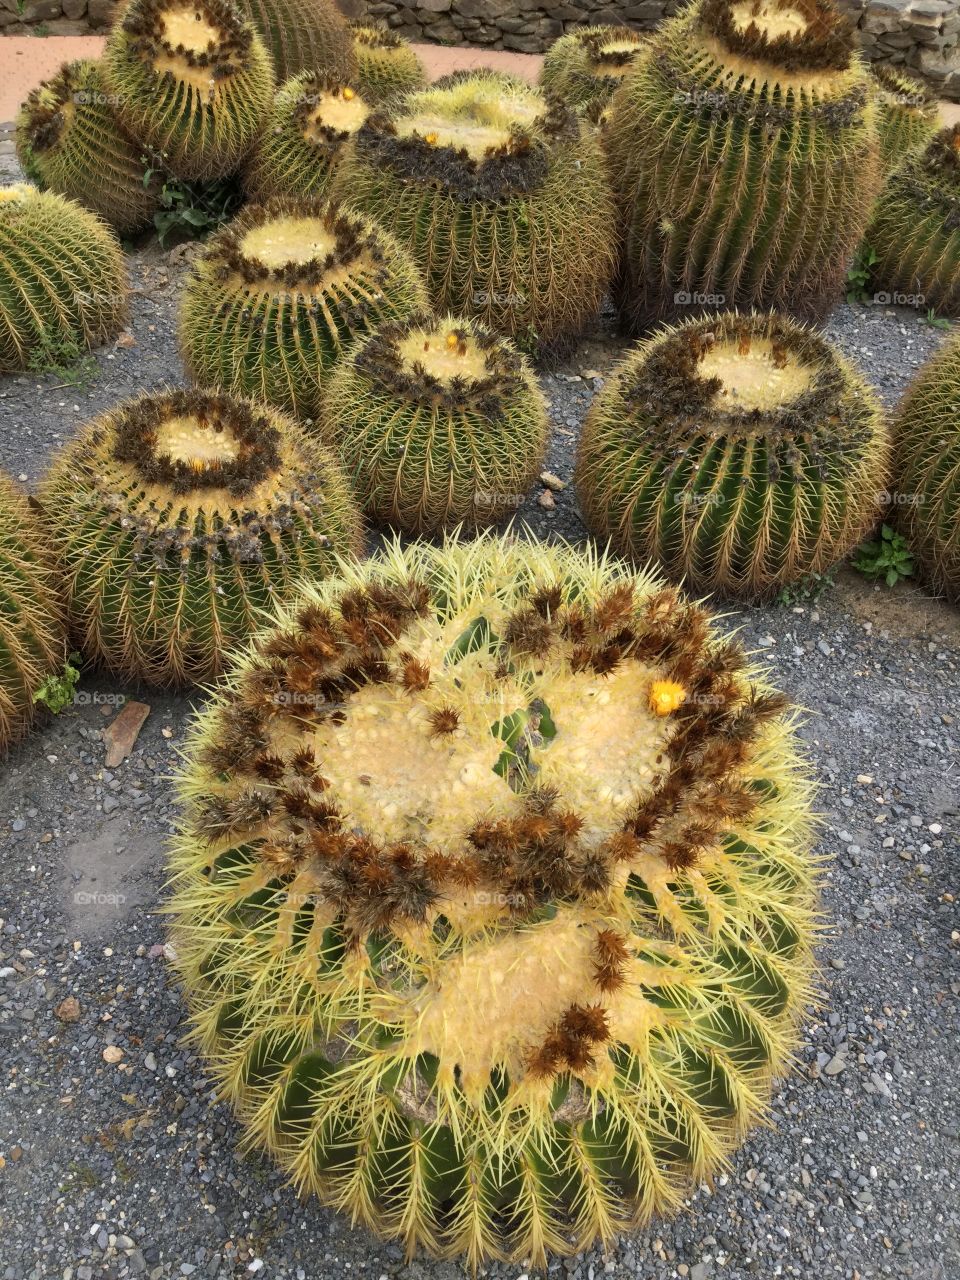 Cactuses in Spain 